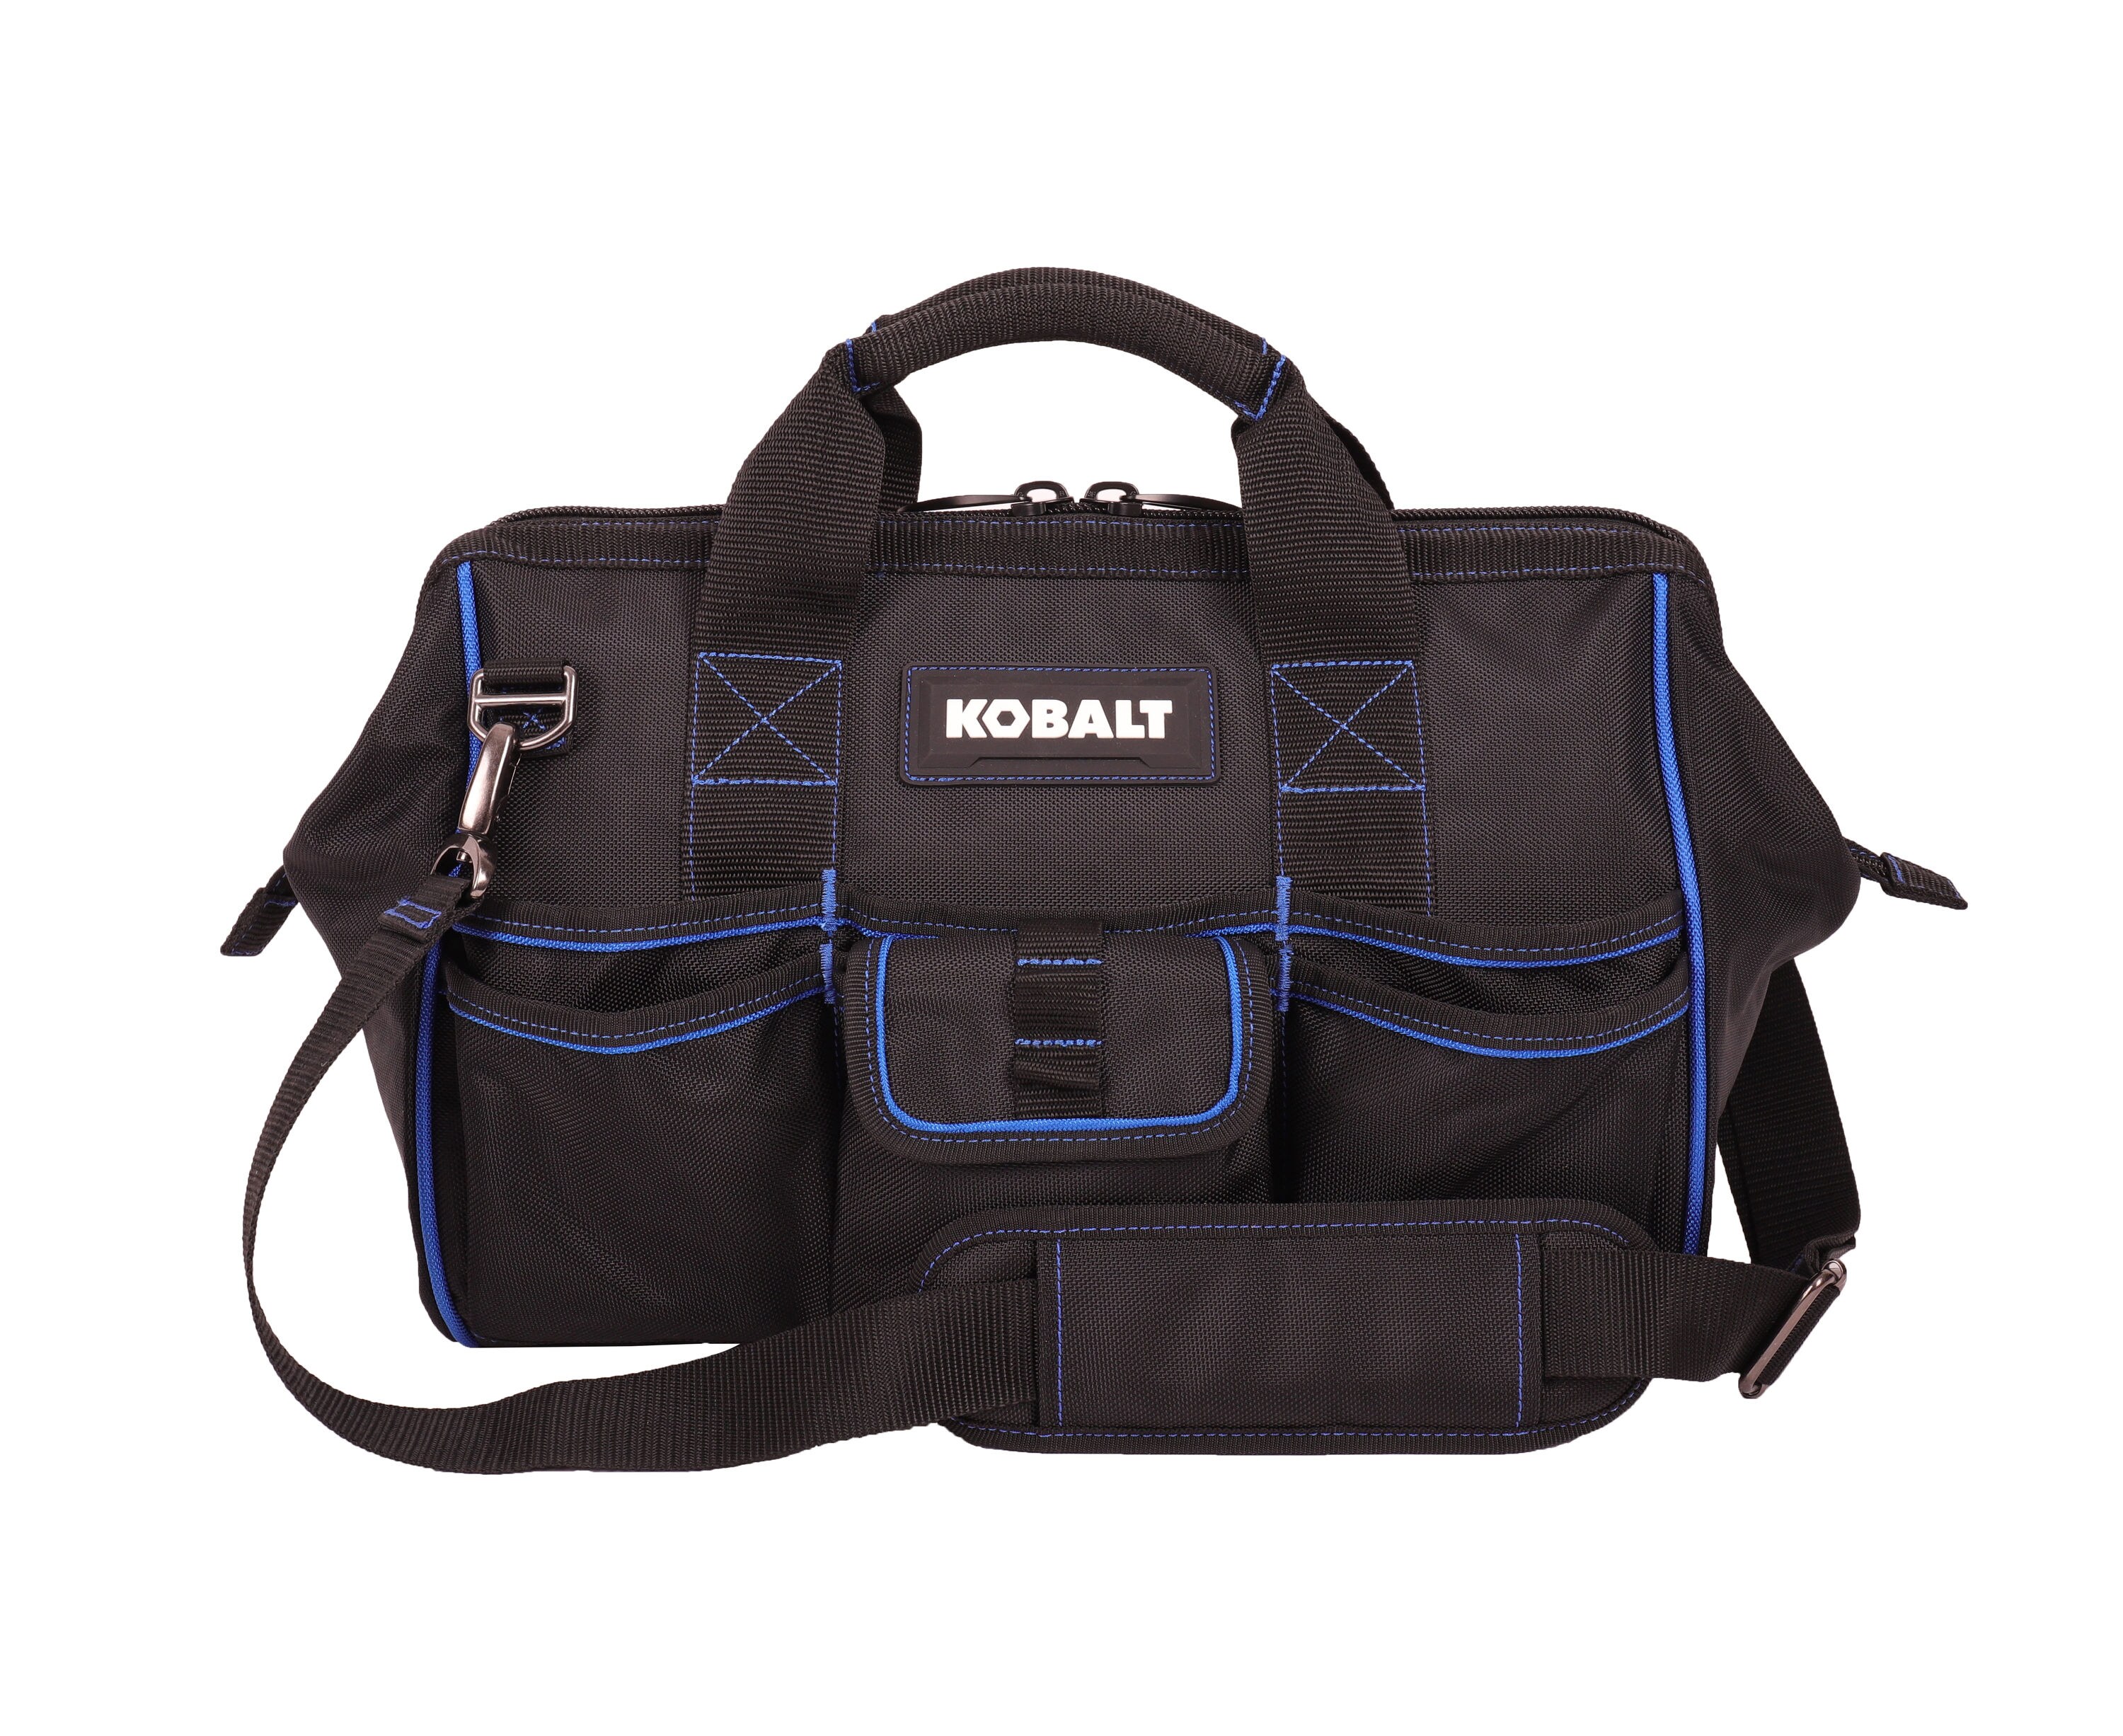 Kobalt 16 In Cargo Tool Bag 1K-2216 